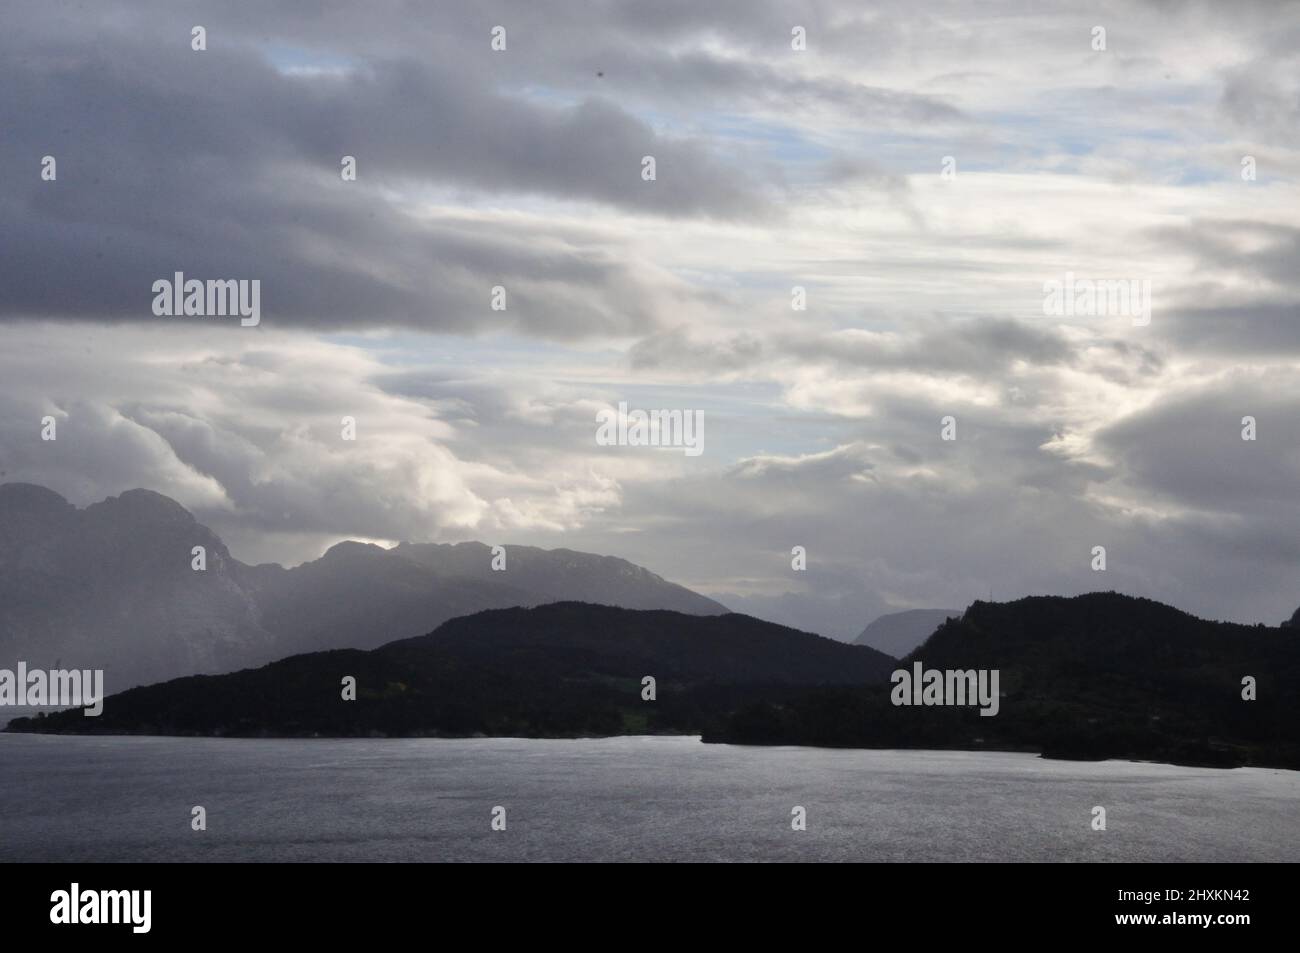 Bei jedem Wetter und in jeder Jahreszeit bietet die Landschaft am Hardangerfjord bei Nordheimsund einen beeindruckend schönen Anblick. - In any weathe Stock Photo